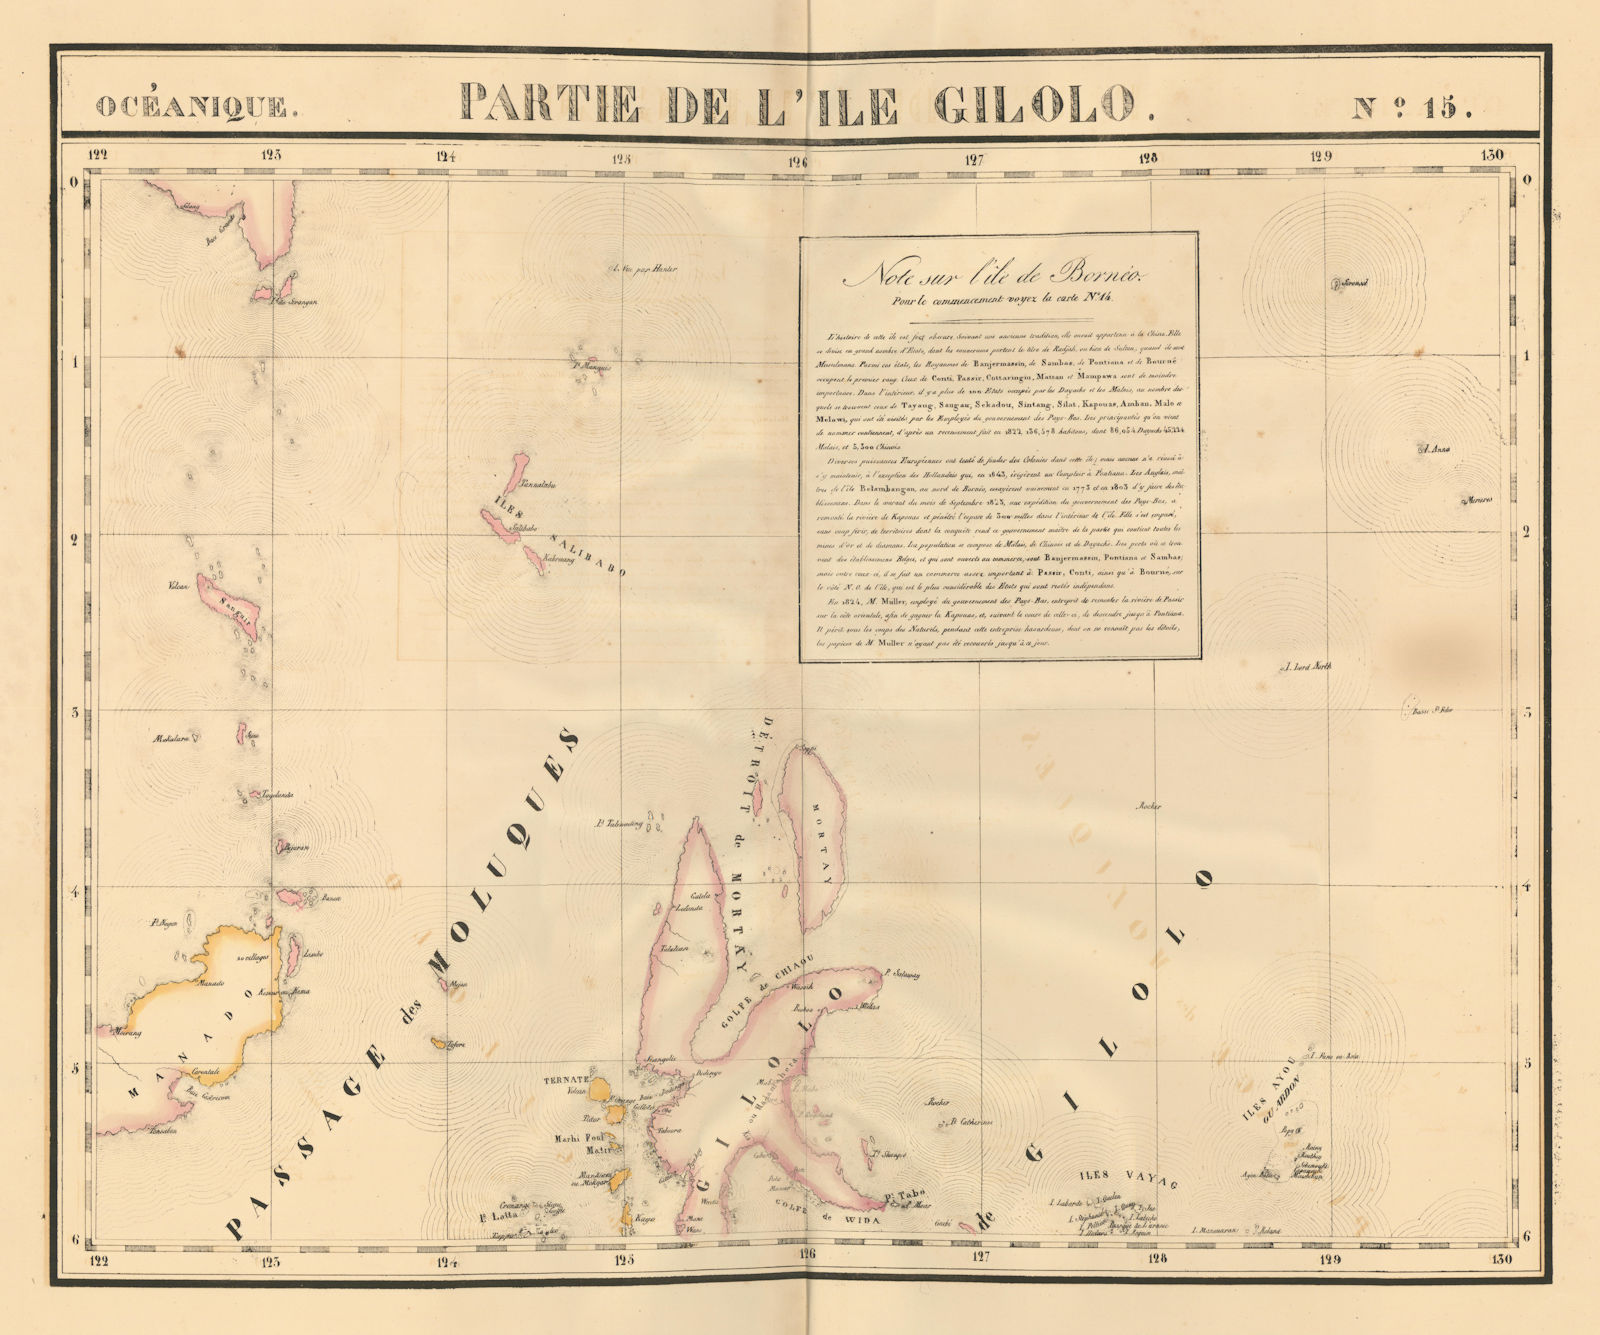 Océanique. Partie de l'Ile Gilolo #15. Halmahera & Manado. VANDERMAELEN 1827 map